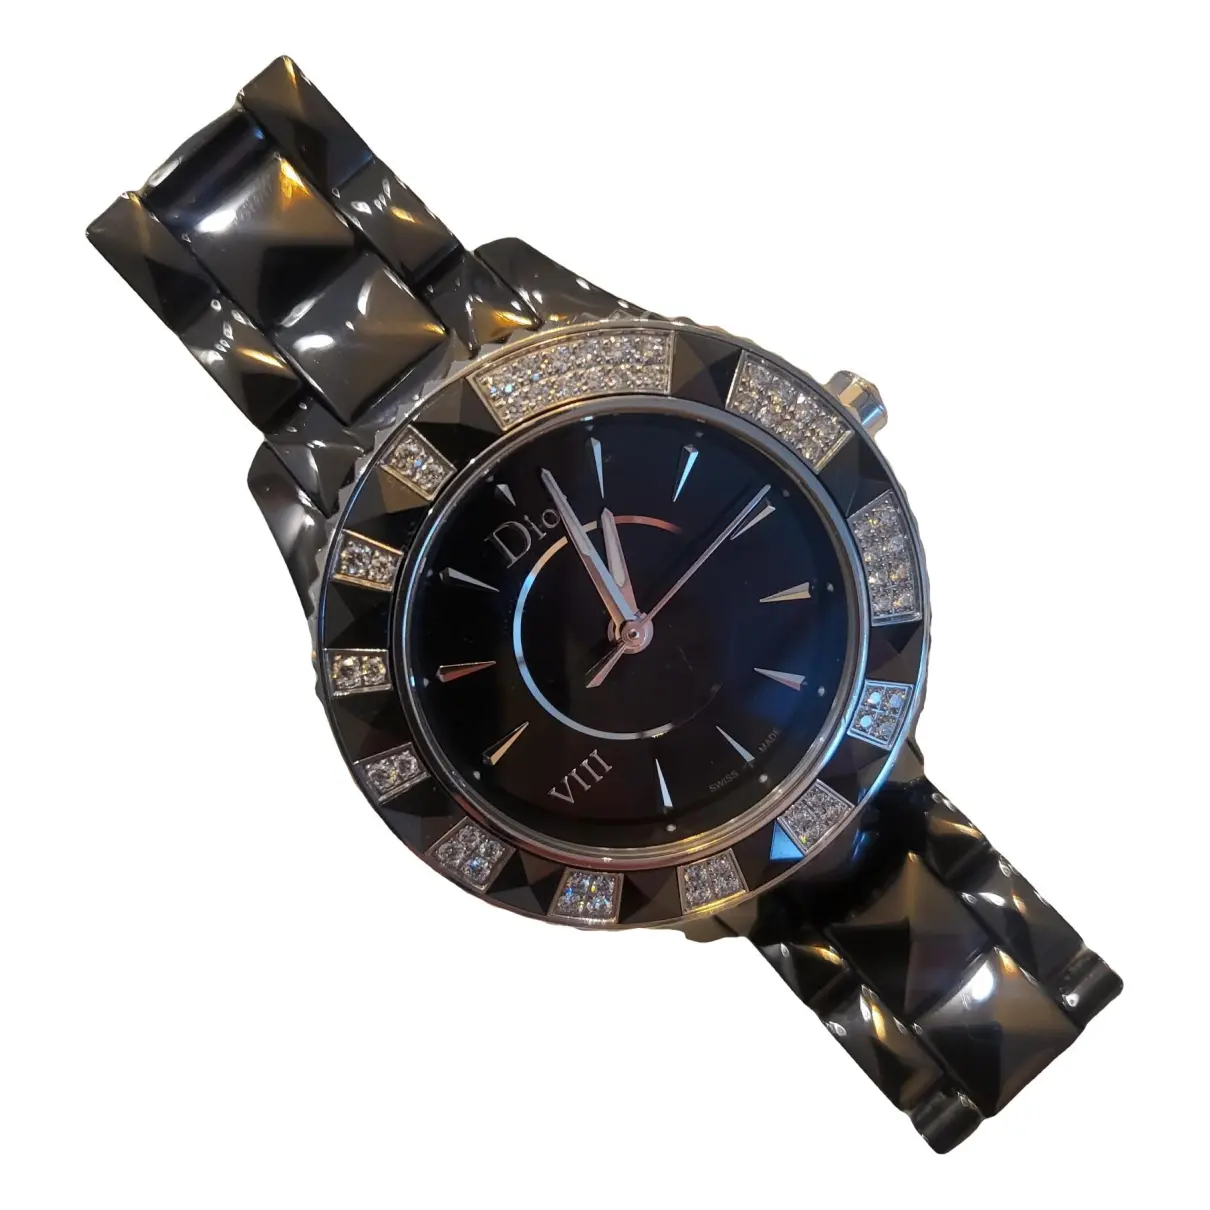 Dior VIII ceramic watch